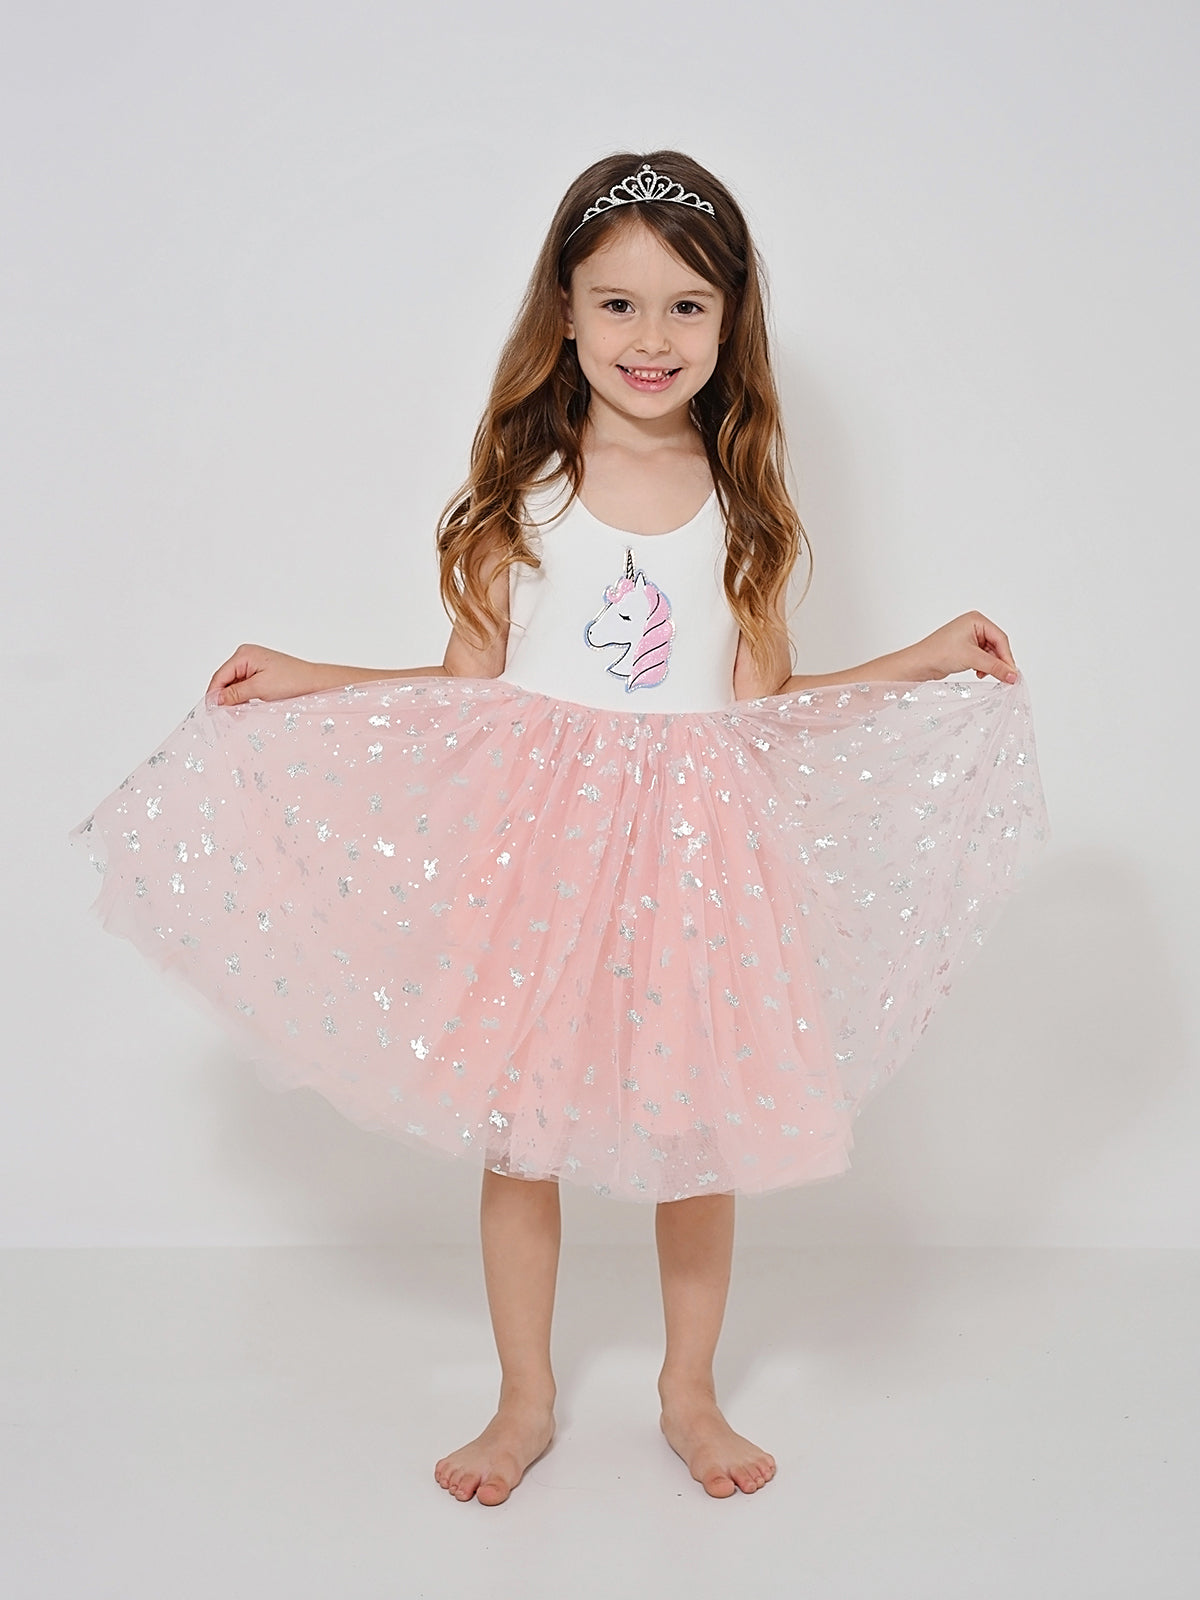 שמלת טול חדי קרן מבריקים ורודה / ילדות ותינוקות- Almonet|עלמונת